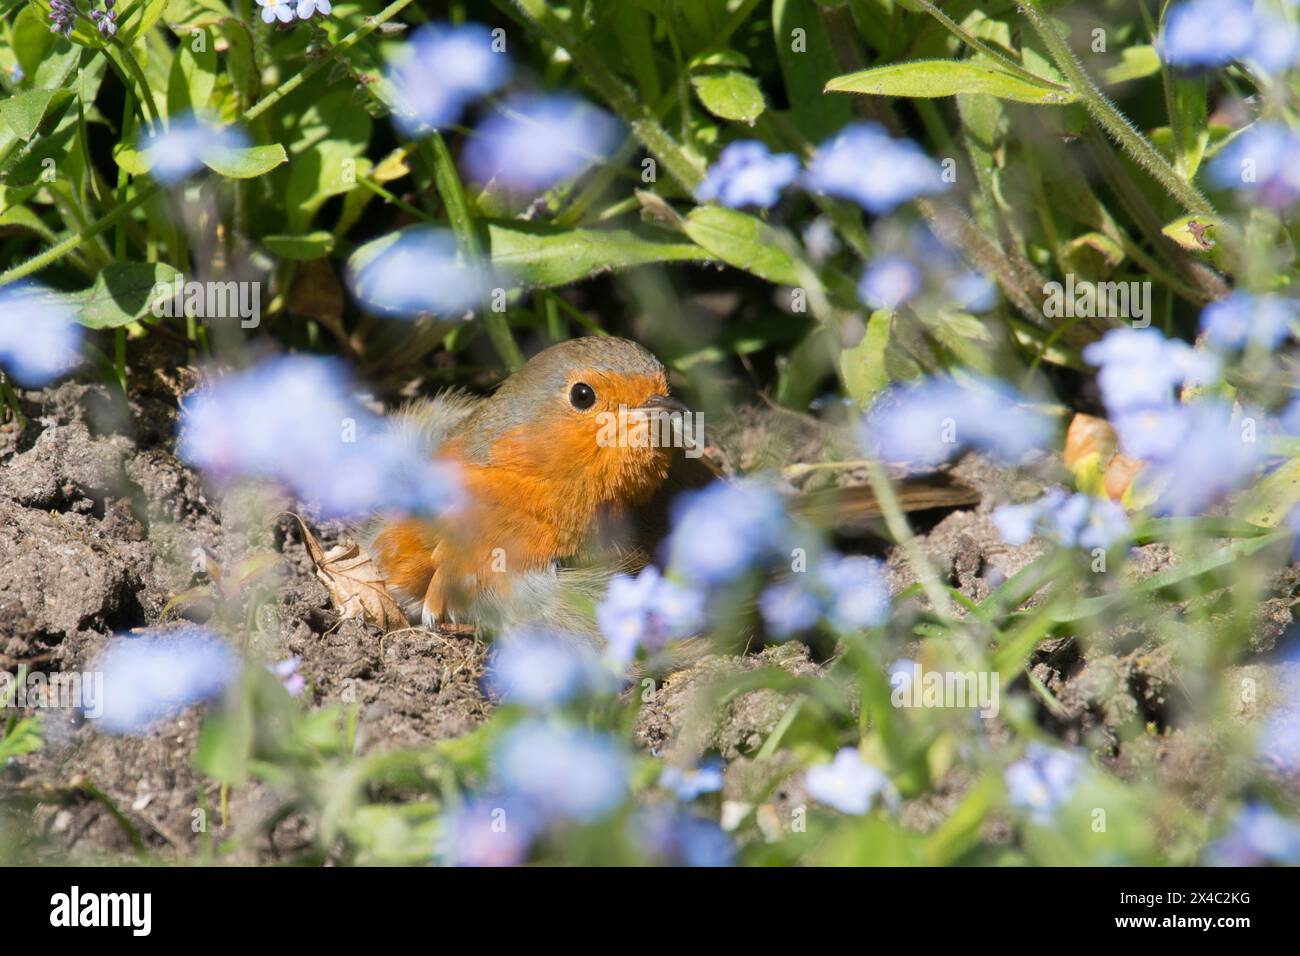 Robin sonnt sich im Staubbad und spreizt seine Flügel in einem Bett aus Vergissmeinnicht-Blumen, Erithacus rubecula Stockfoto